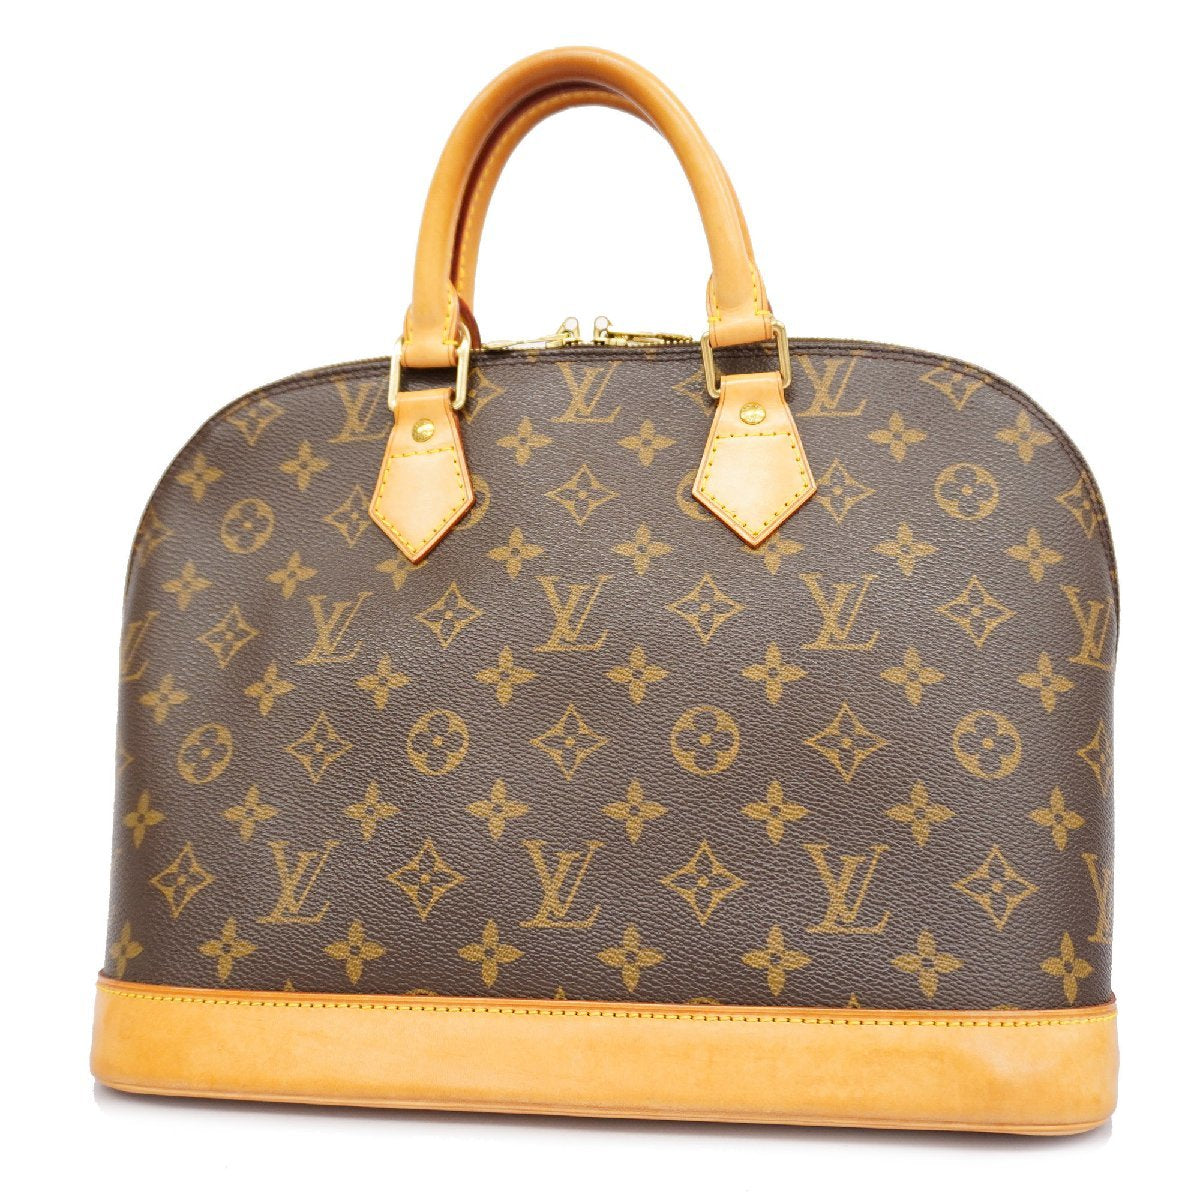 Louis Vuitton Alma Bag